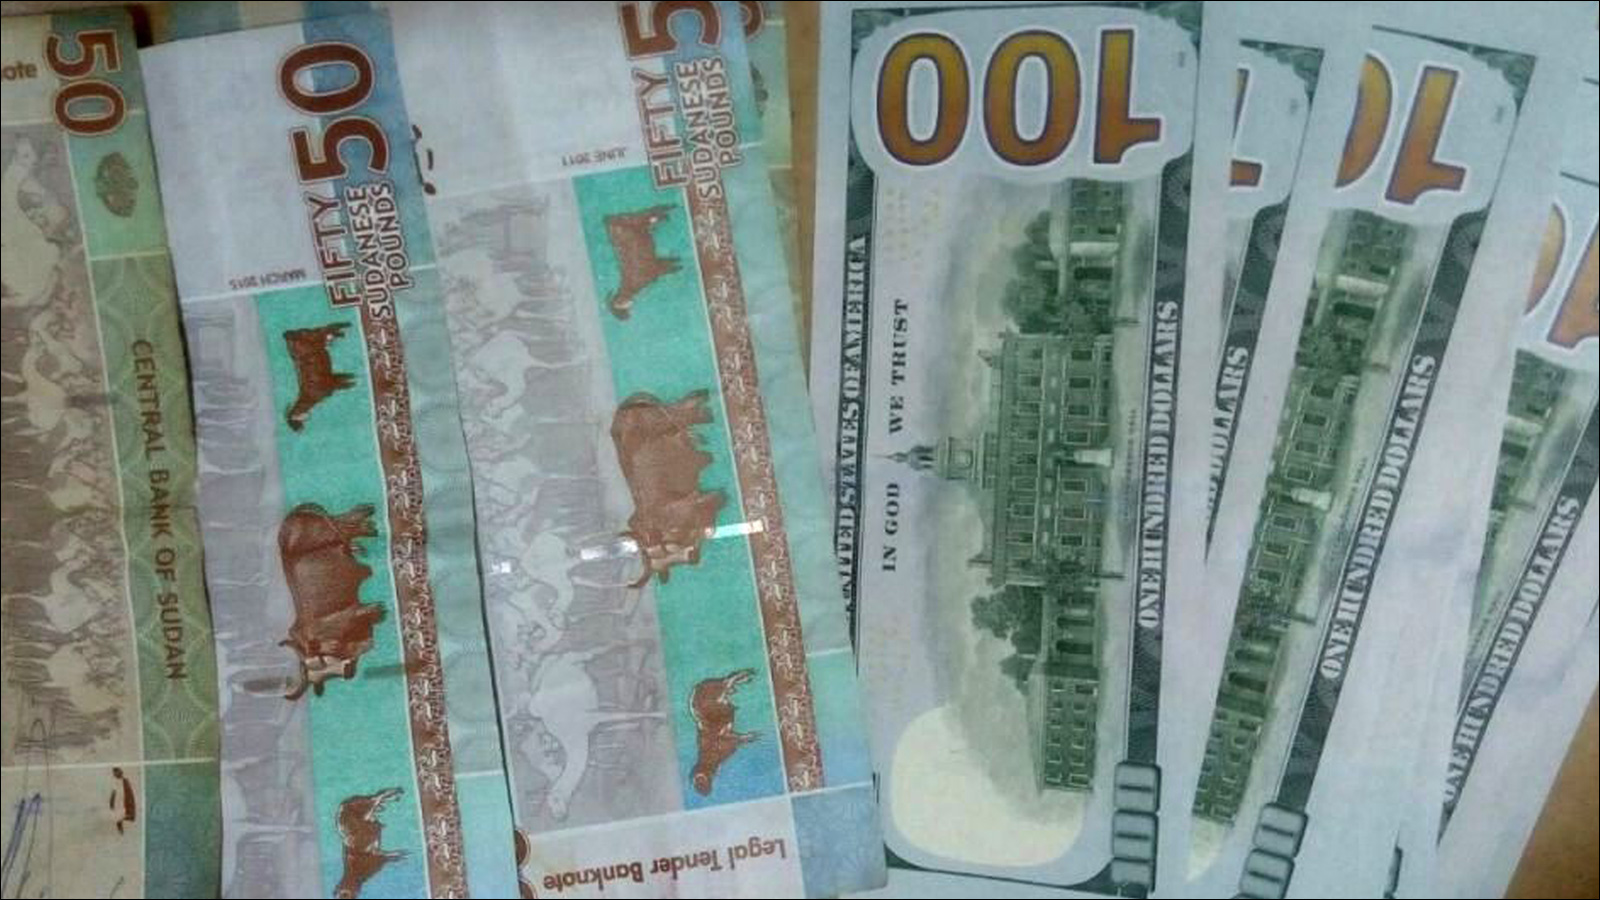 ‪السودان حدد سعر عملته بـ 47.5 جنيها للدولار الواحد‬ السودان حدد سعر عملته بـ 47.5 جنيها للدولار الواحد (الجزيرة )